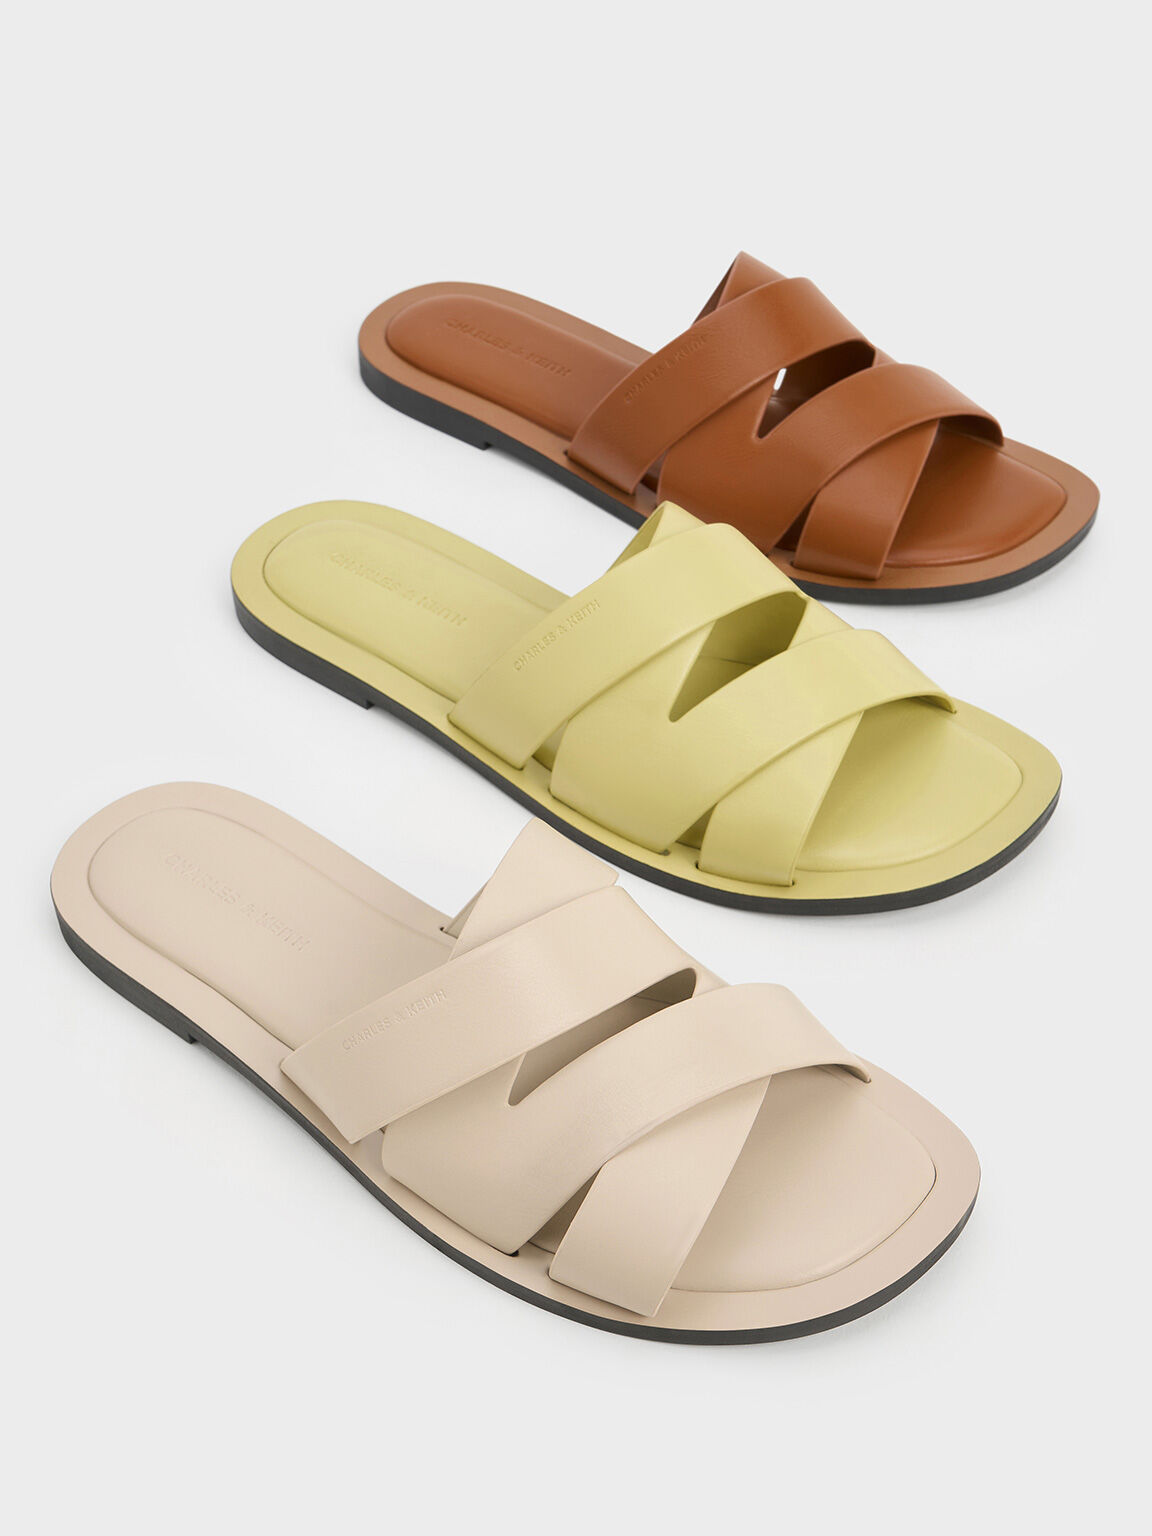 Strappy Crossover Slide Sandals, Beige, hi-res